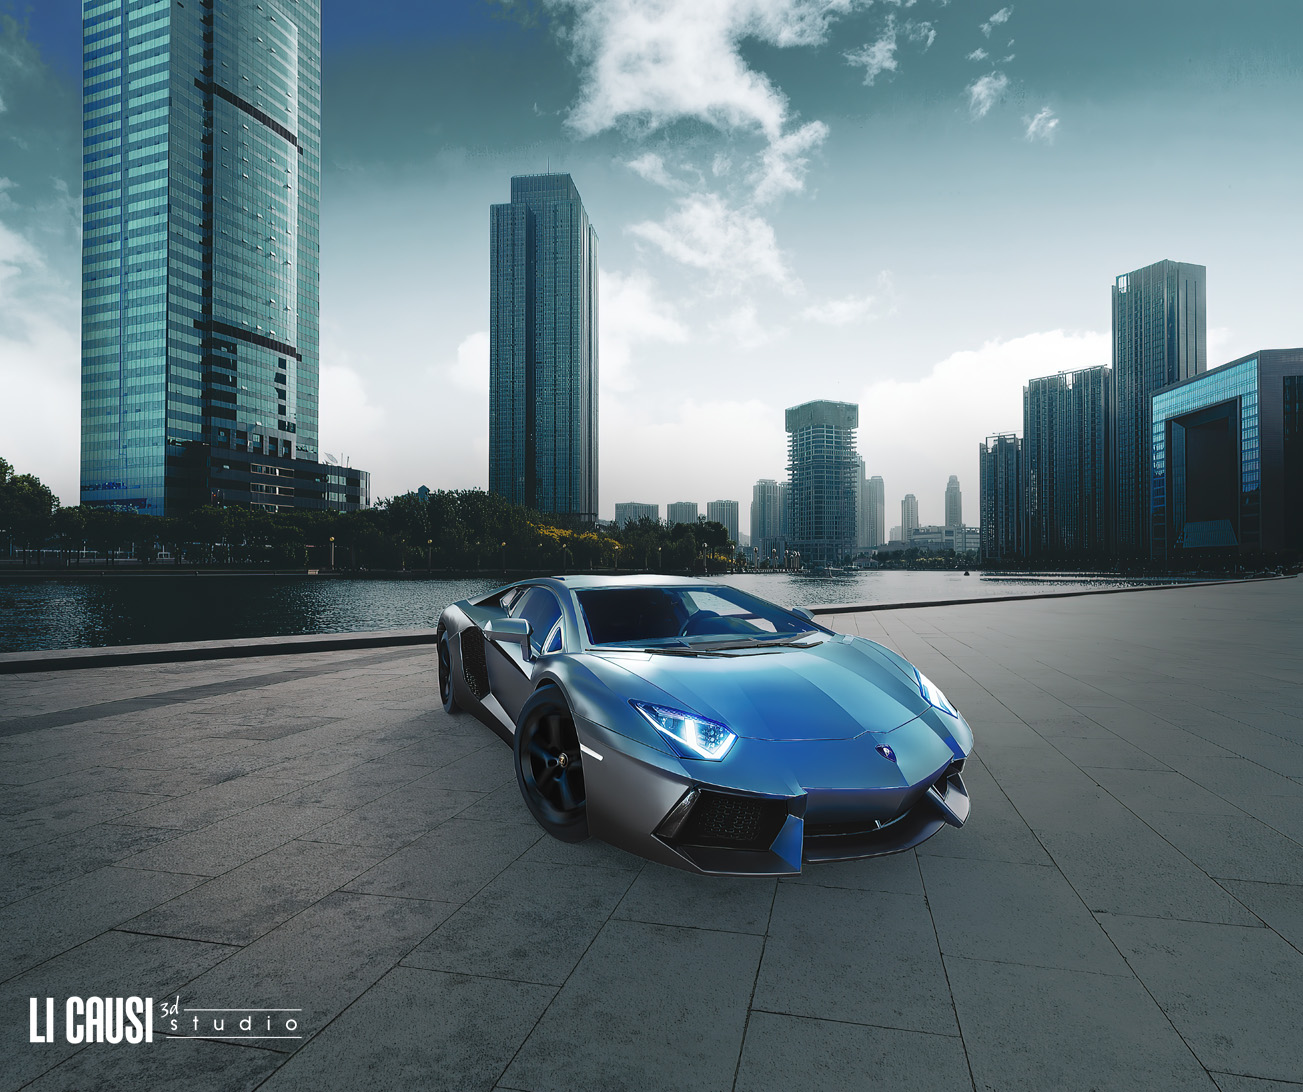 Modellazione 3D e rendering lamborghini Aventador automotive